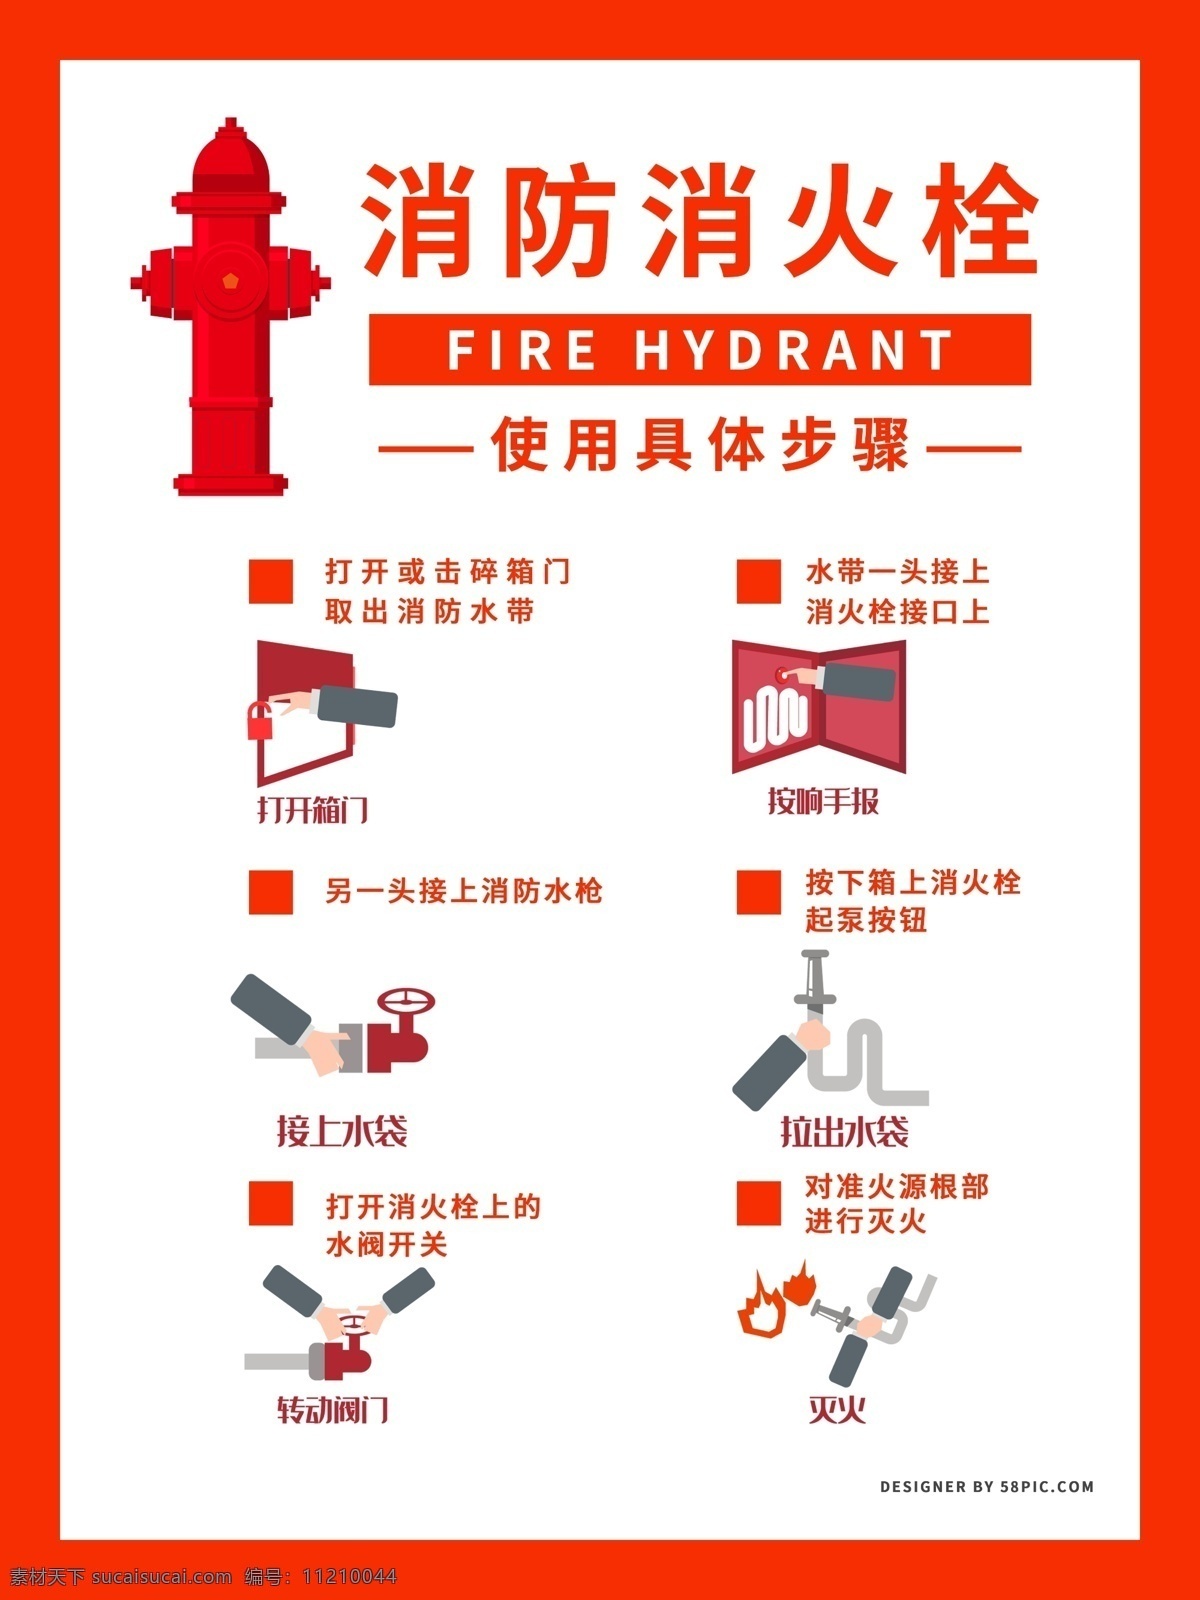 简约 版 消防 消火栓 使用 步骤 海报 简约版 消防消火栓 使用步骤 消火栓海报